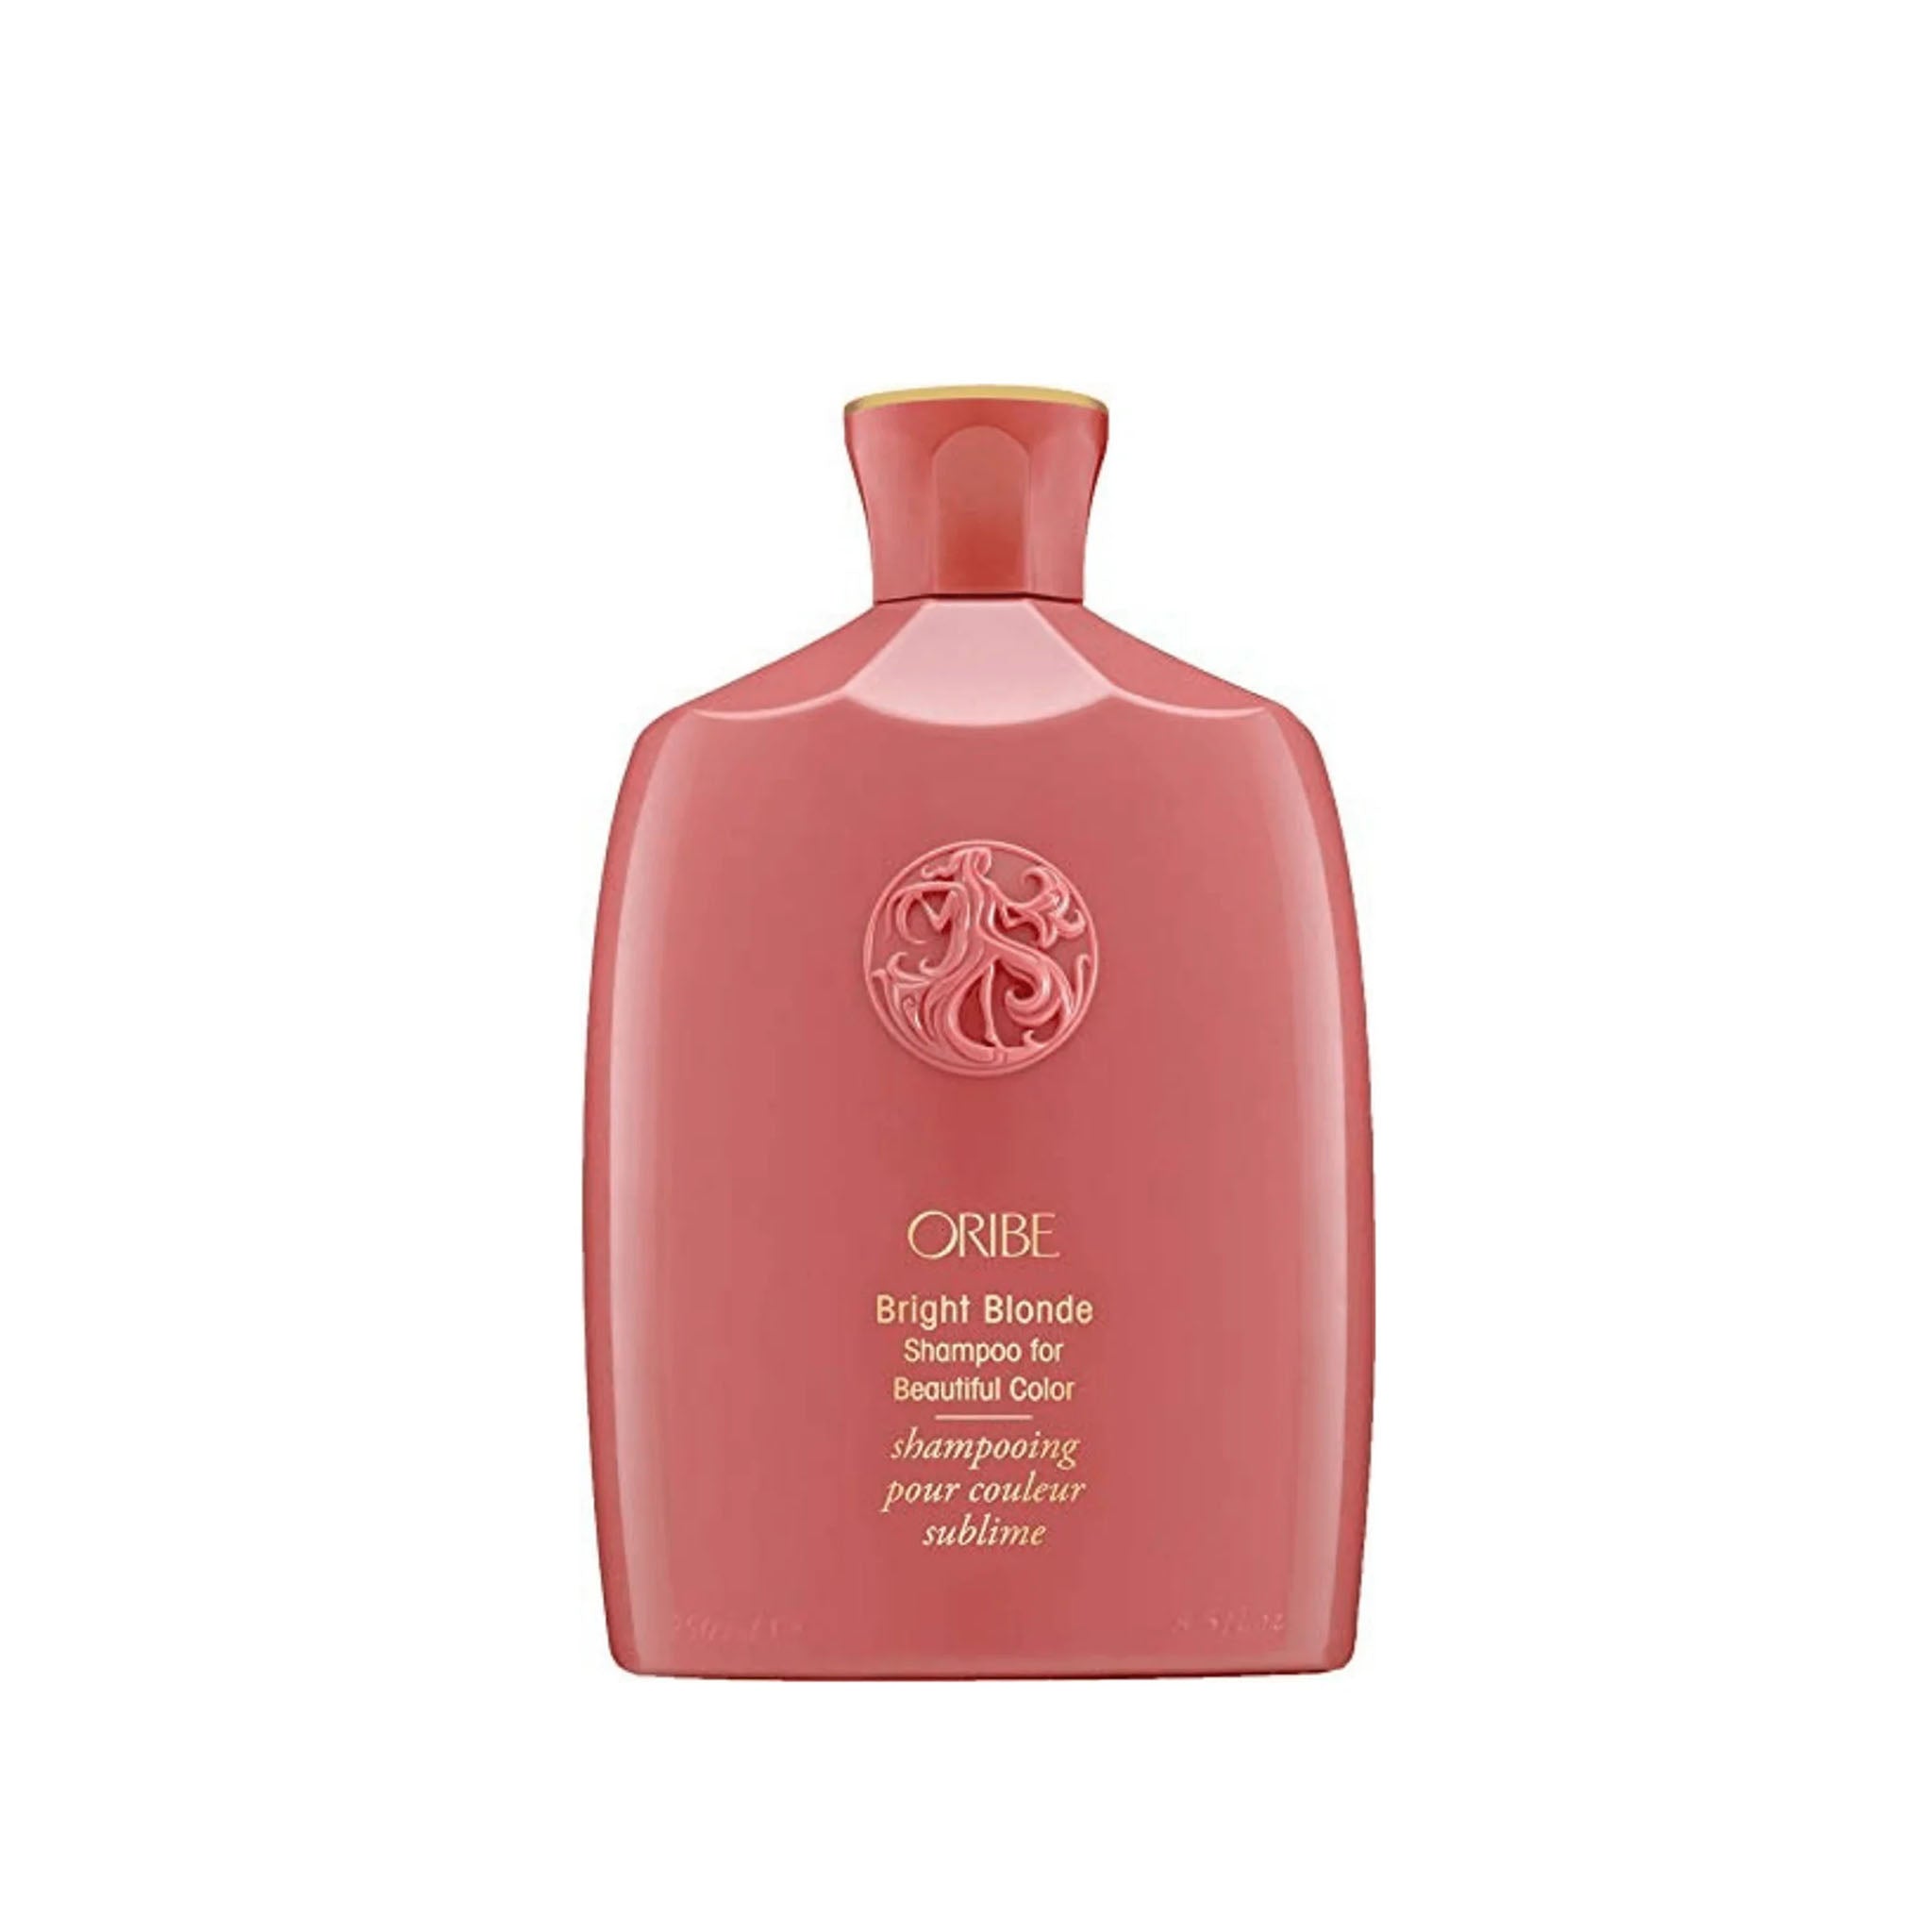 Oribe. Shampoing pour Couleur Sublime Bright Blonde - 250 ml - Concept C. Shop